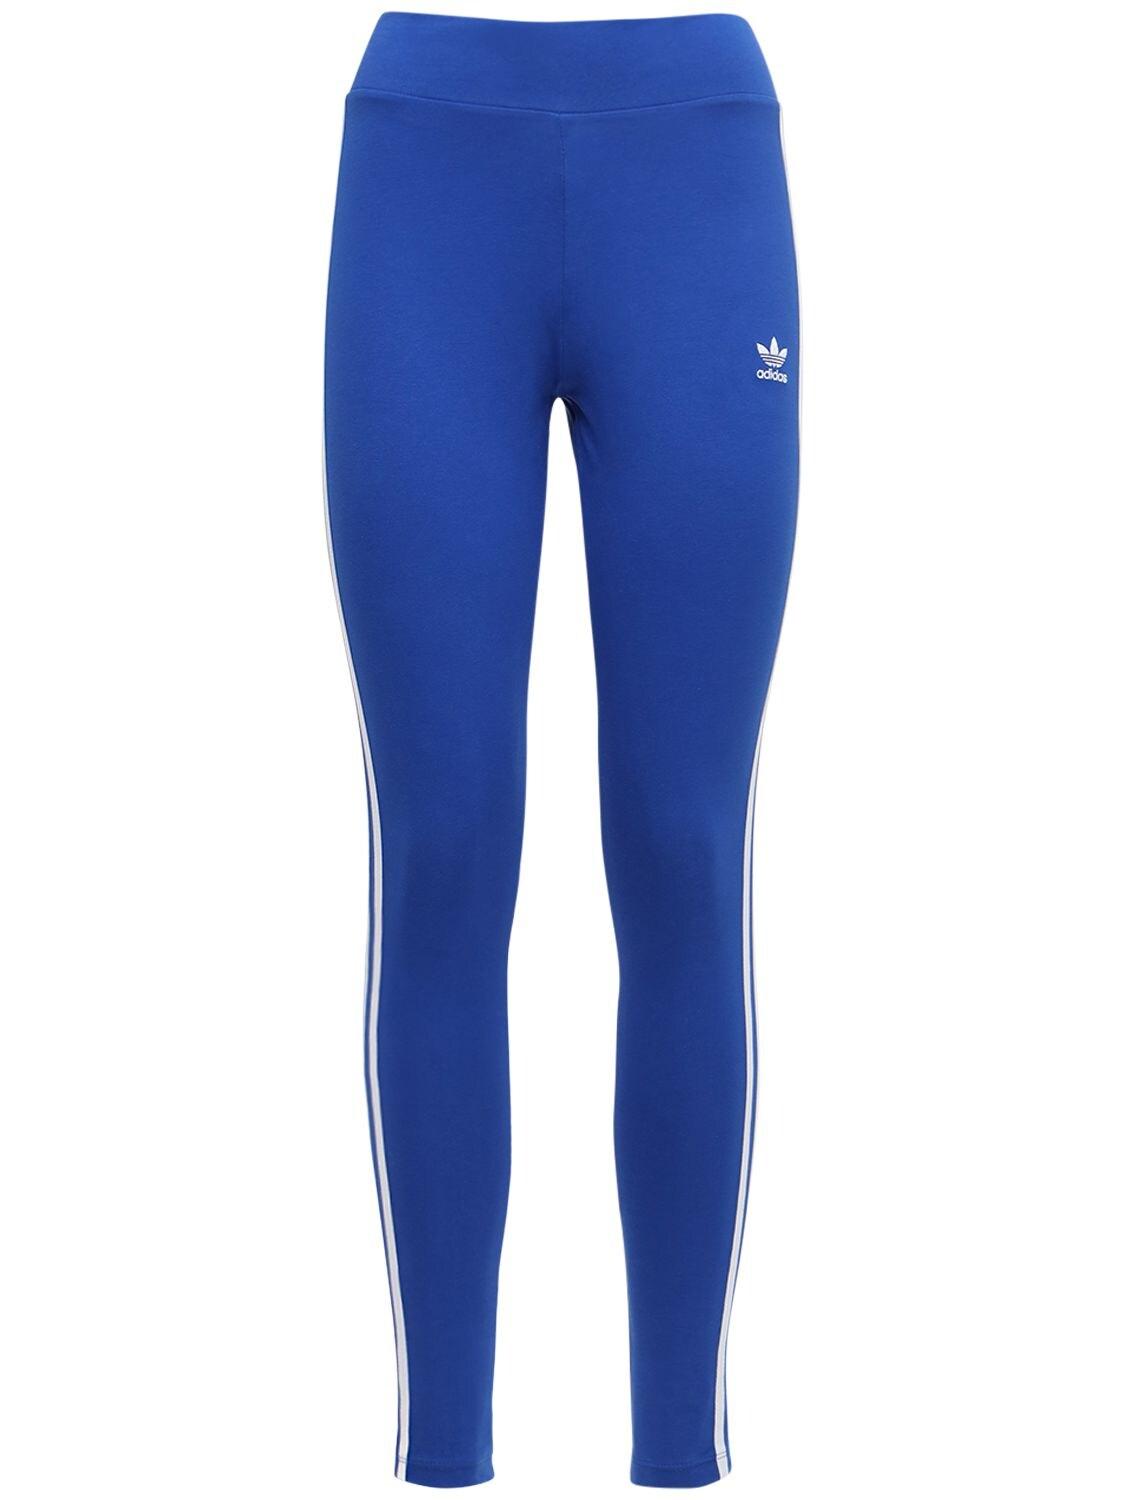 adidas Originals Blue leggings 3 | Stripes Lyst in Cotton Tight